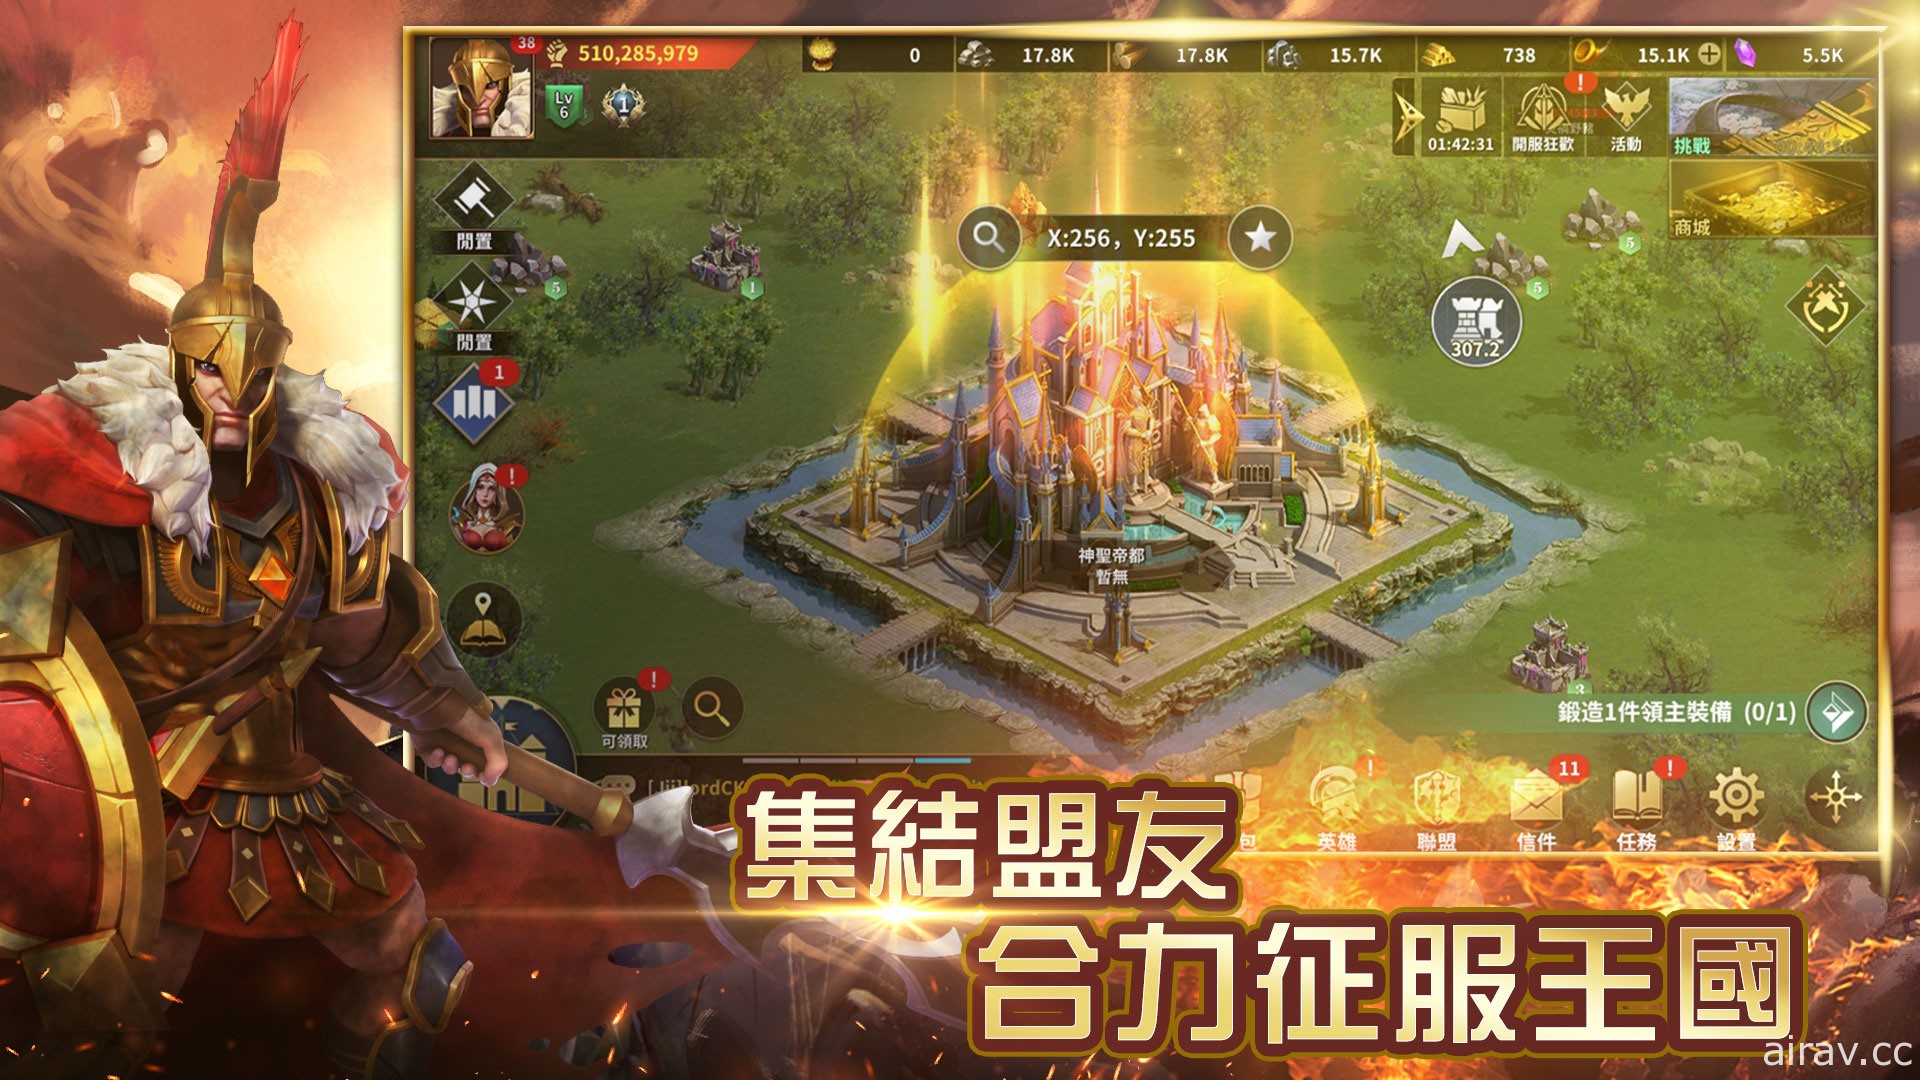 城戰策略遊戲《權力帝國》雙平台正式上線 同步釋出聯盟及軍事特色系統